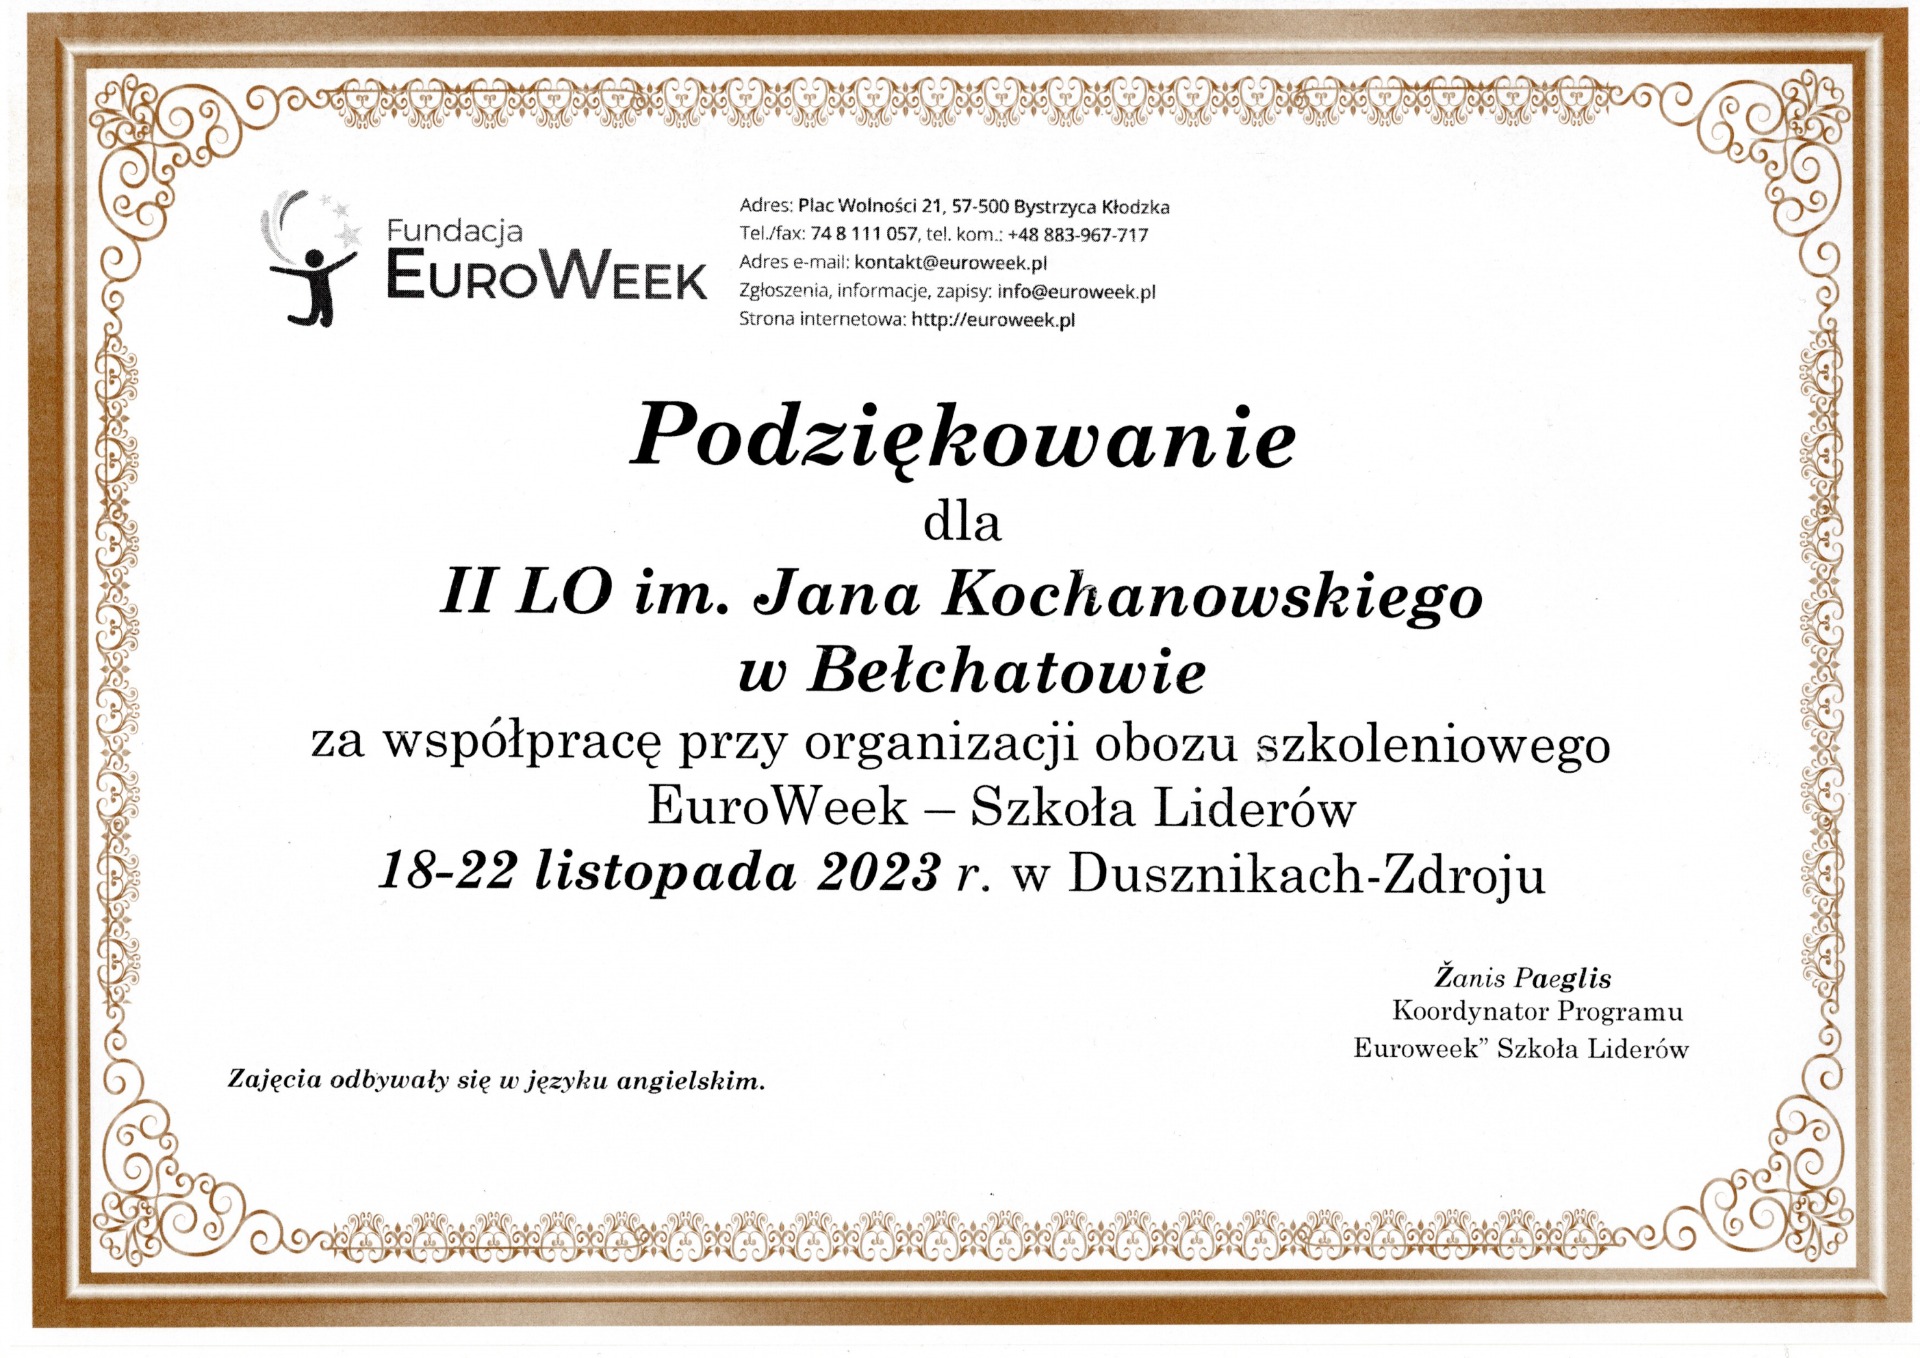 Podziękowanie dla II Liceum Ogólnokształcącego im. J. Kochanowskiego w Bełchatowie za współpracę przy organizacji obozu szkoleniowego EuroWeek - szkoła liderów